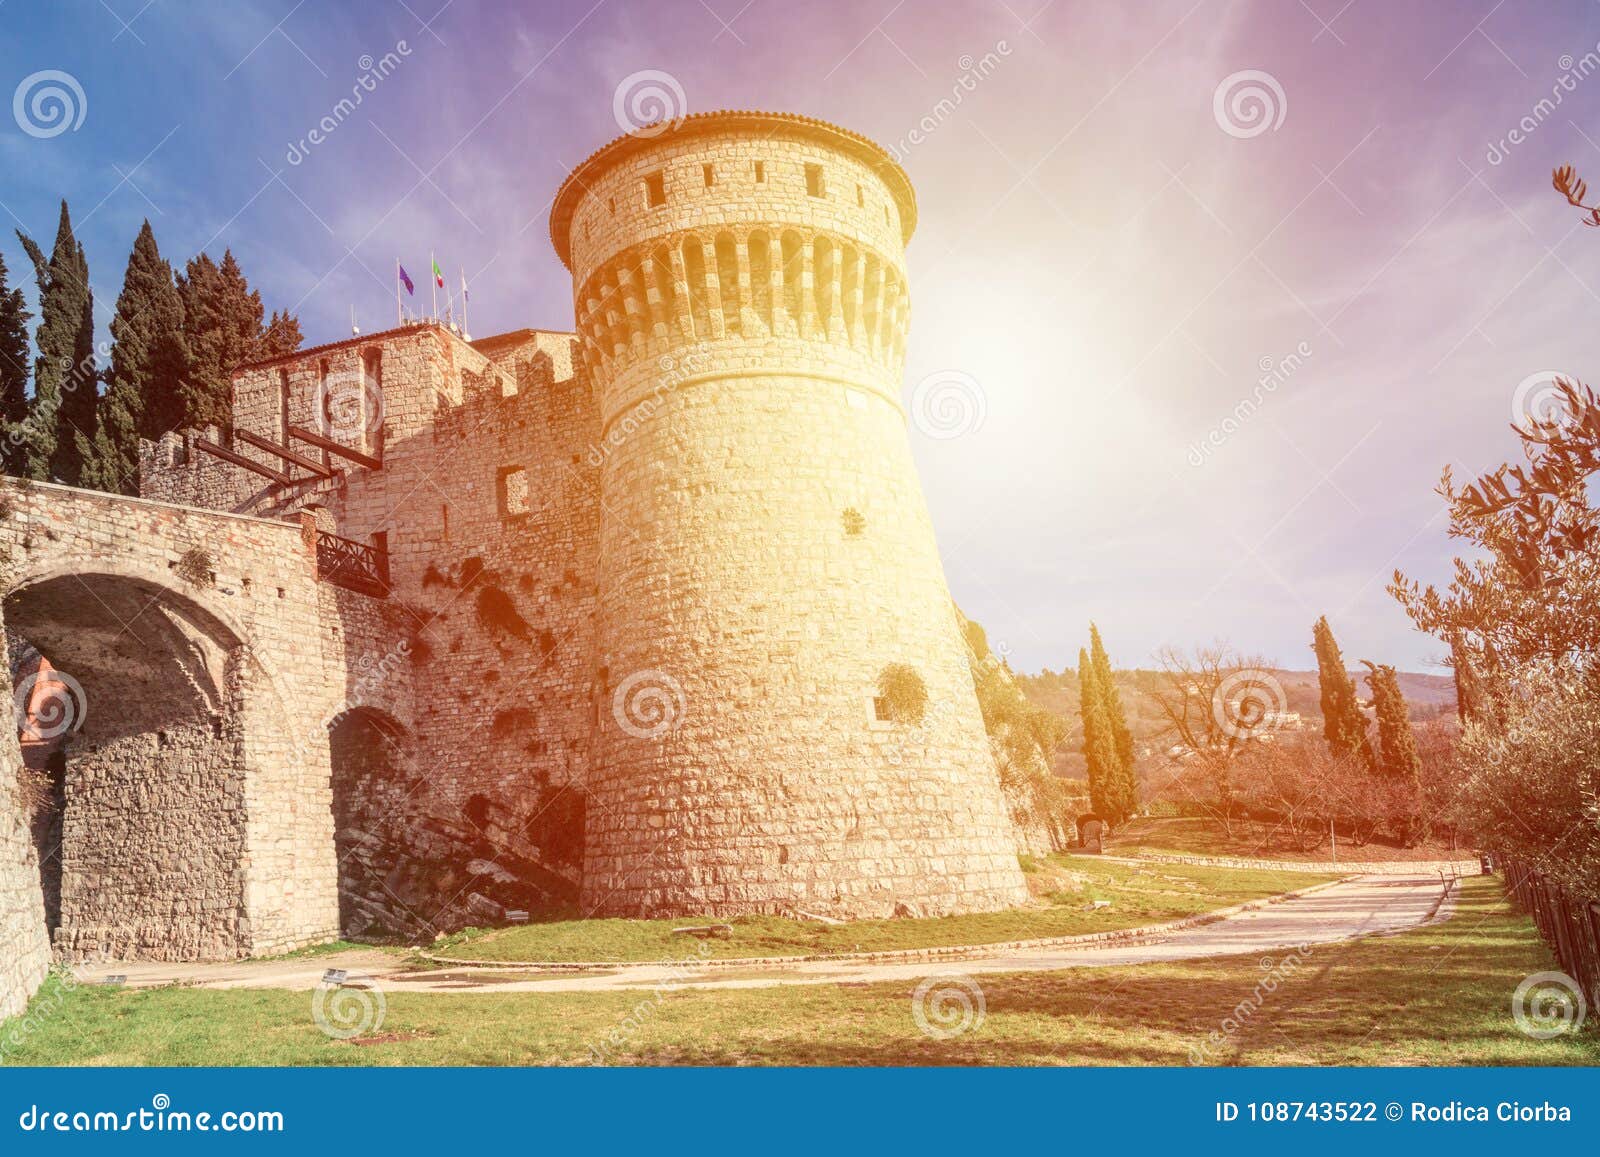 castle on the hill cidneo in city of brescia, italy